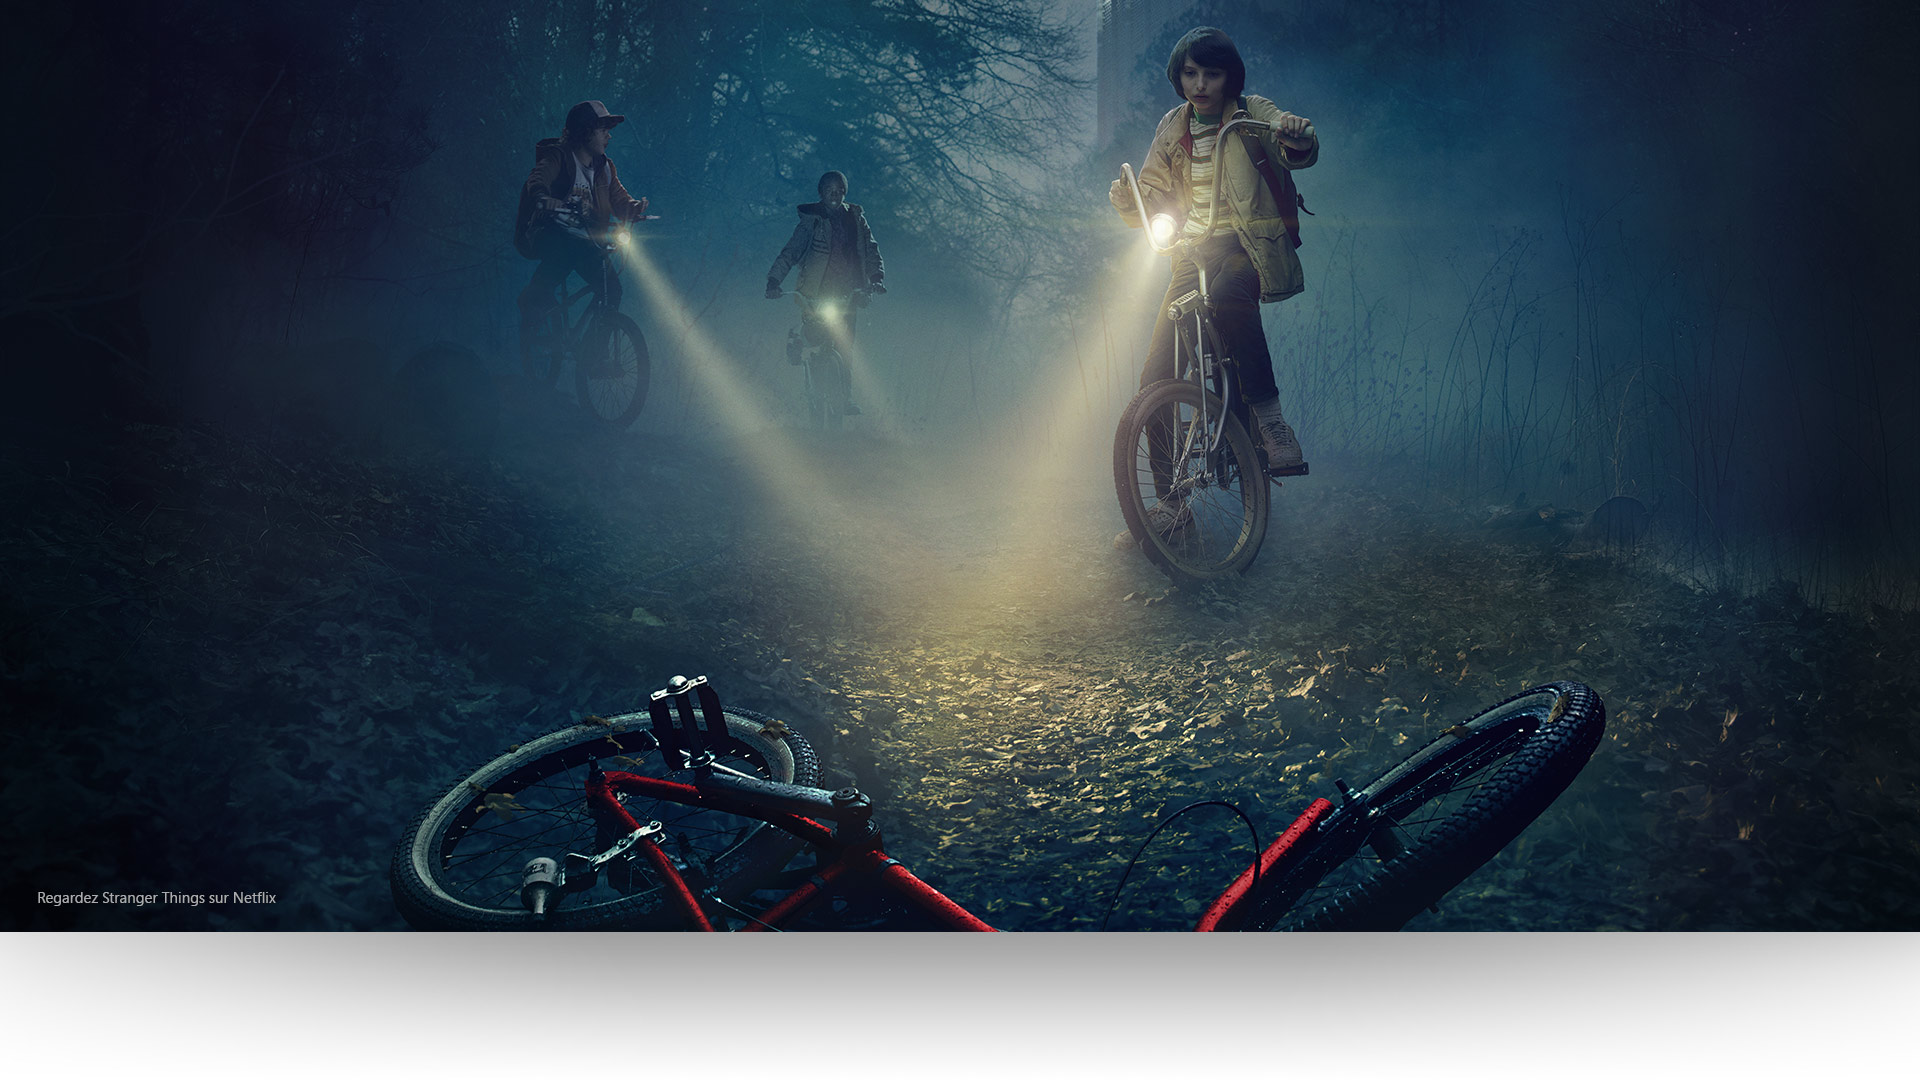 Stranger Things - Dustin, Lucas et Mike éclairent un vélo abandonné sur un sentier forestier lugubre. Regardez Stranger Things sur Netflix.